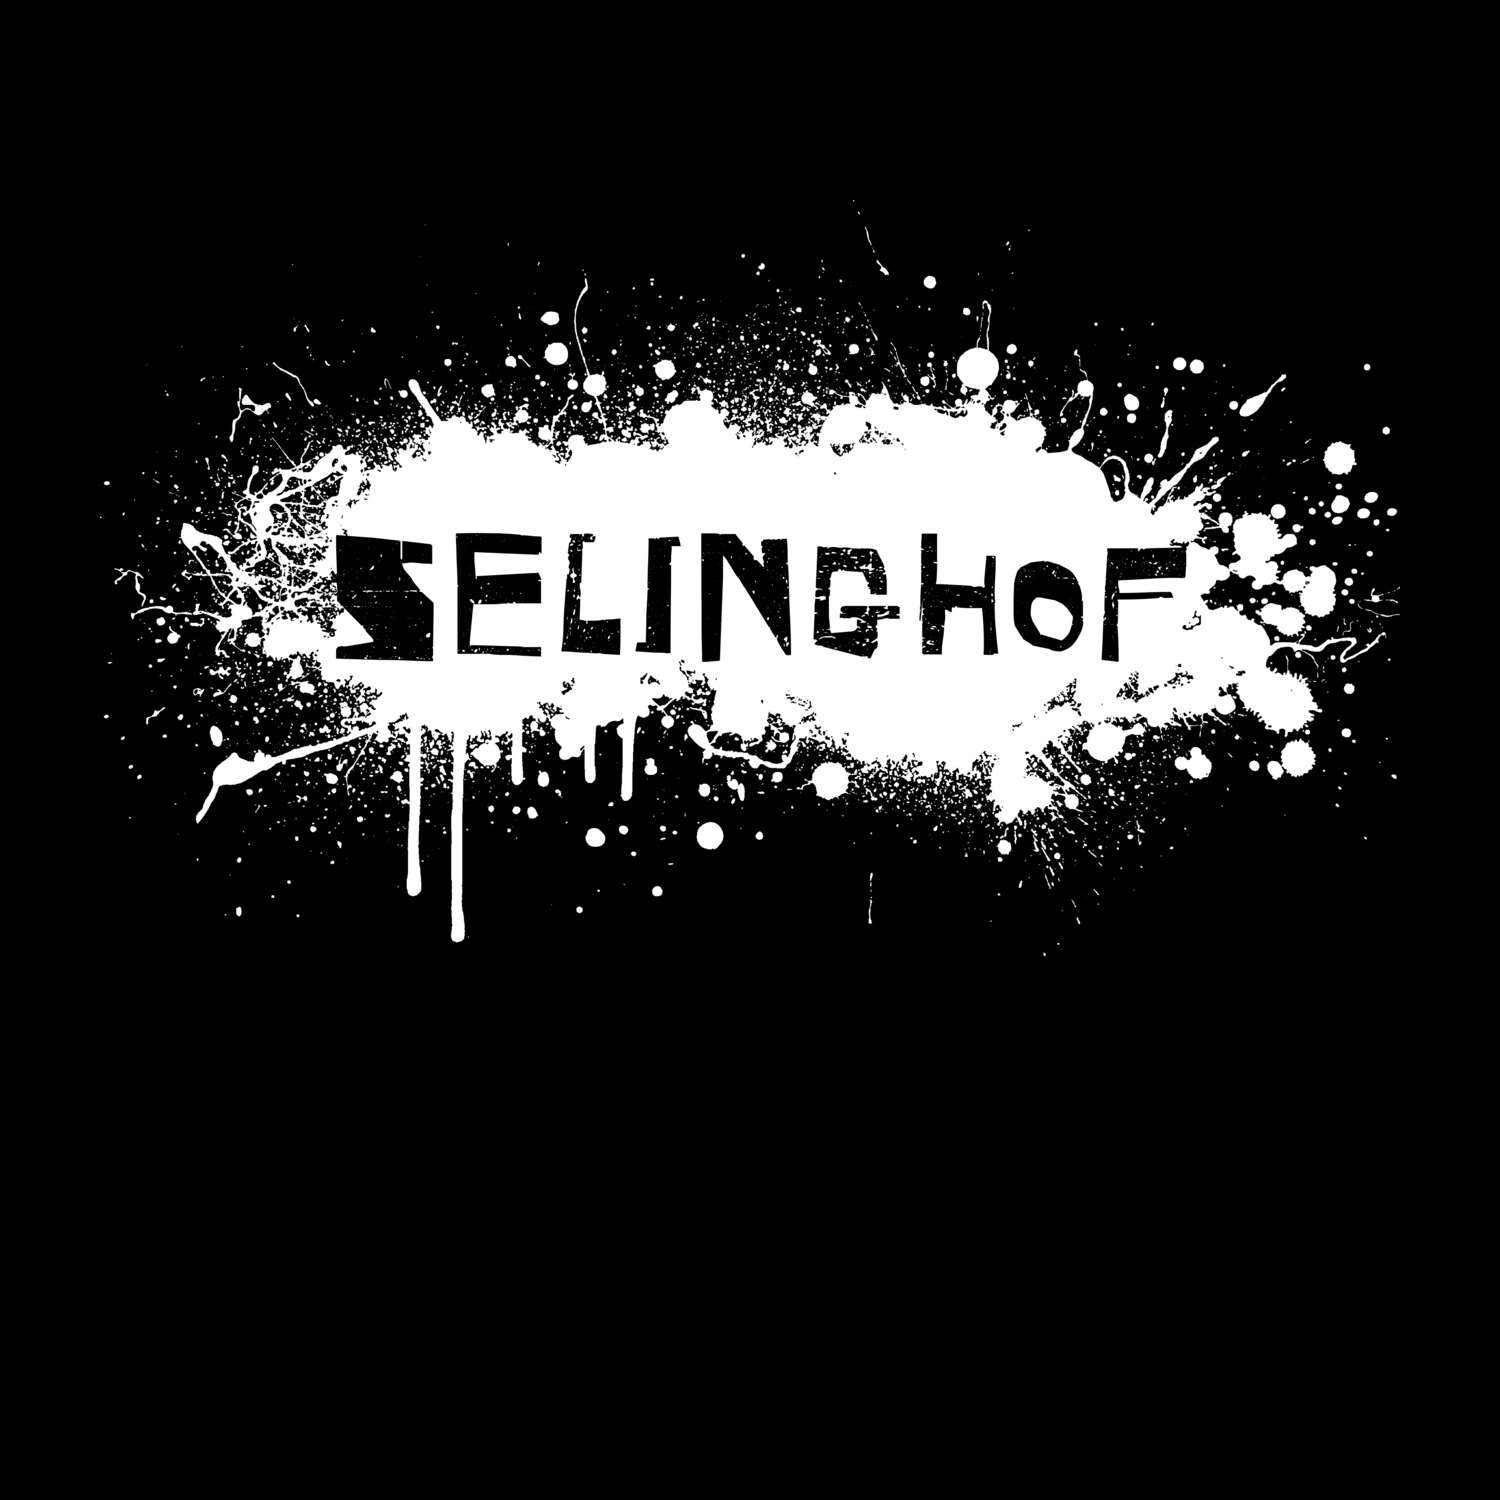 Selinghof T-Shirt »Paint Splash Punk«